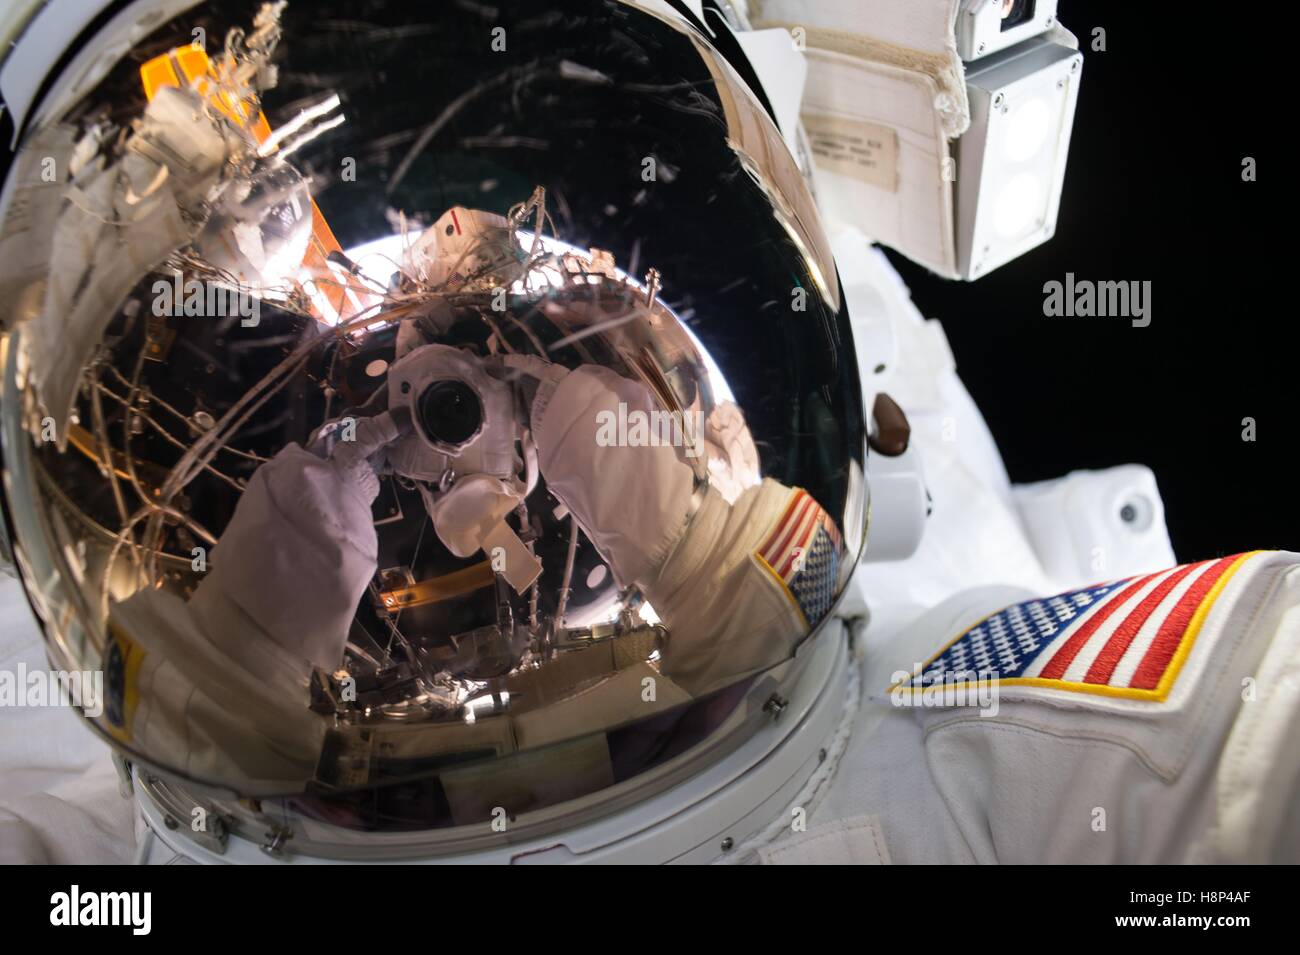 La NASA Stazione Spaziale Internazionale astronauta Kate Rubins prende un selfie nella sua tuta spaziale durante un EVA spacewalk per installare il internazionale adattatore docking Agosto 19, 2016 in orbita intorno alla terra. L'IDAs verrà utilizzato per il futuro arrivi di Boeing e SpaceX commerciale veicolo spaziale dell'equipaggio. Foto Stock